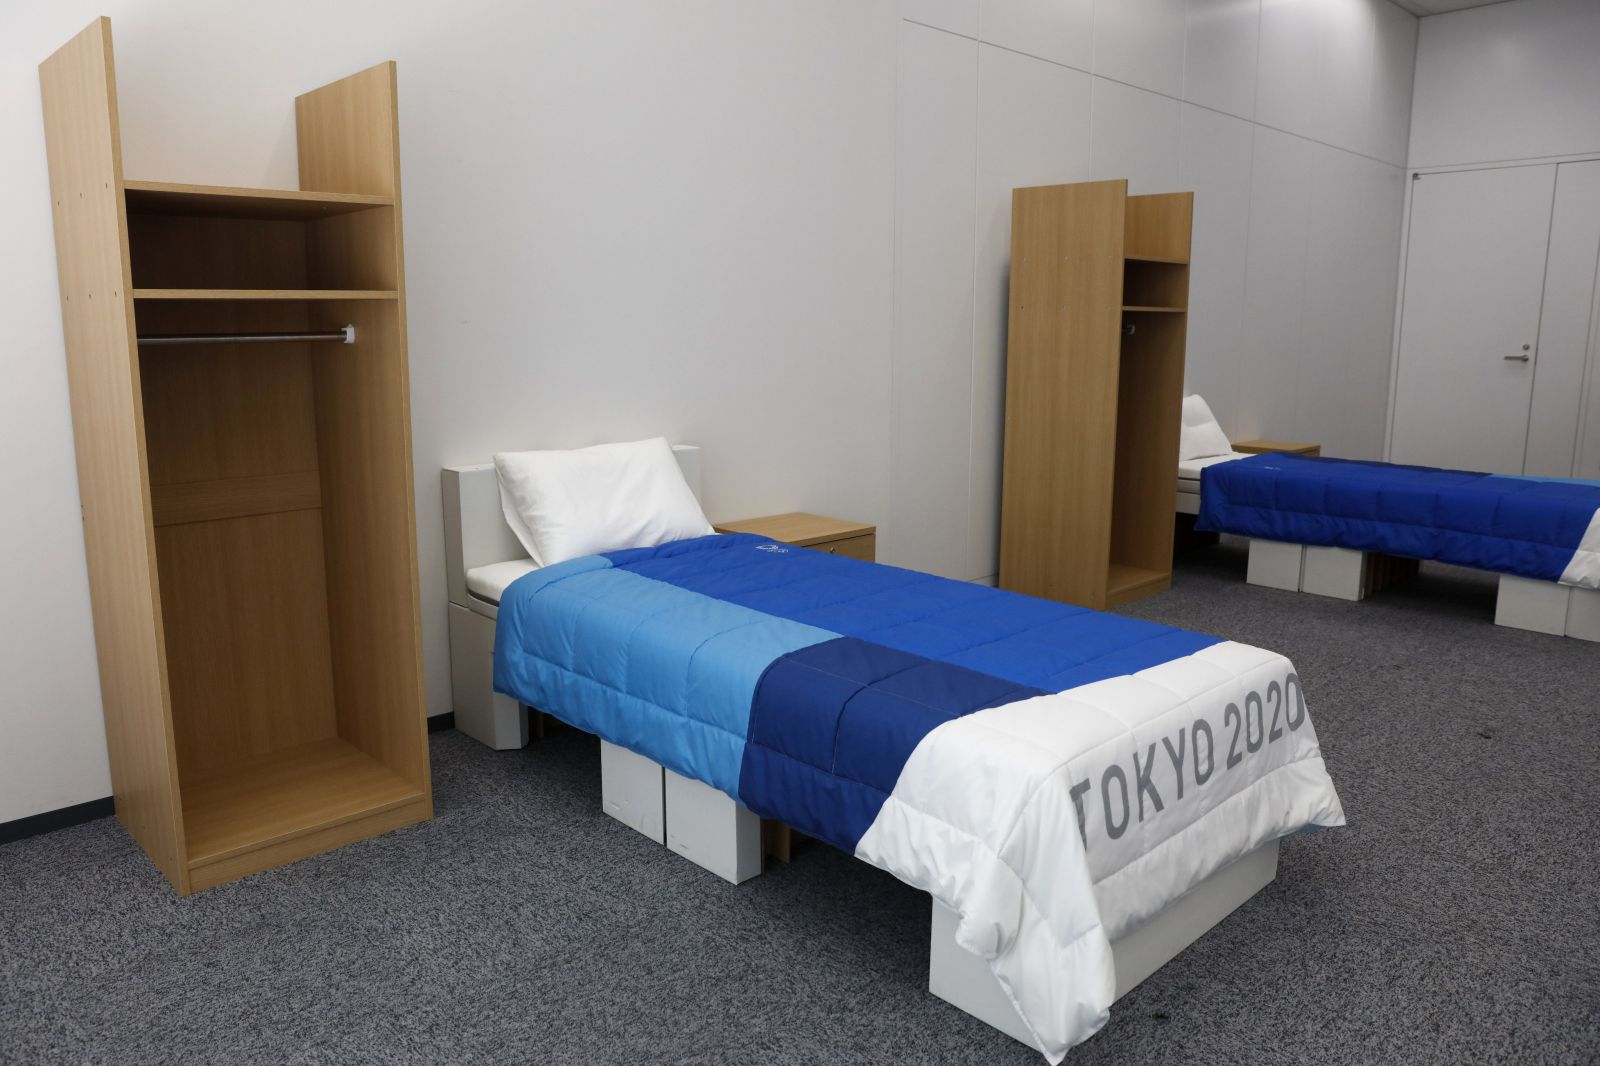 Olympionici v Tokiu budú spať na posteliach z recyklovaných krabíc. Organizátori chcú, aby bola udalosť ekologickejšia